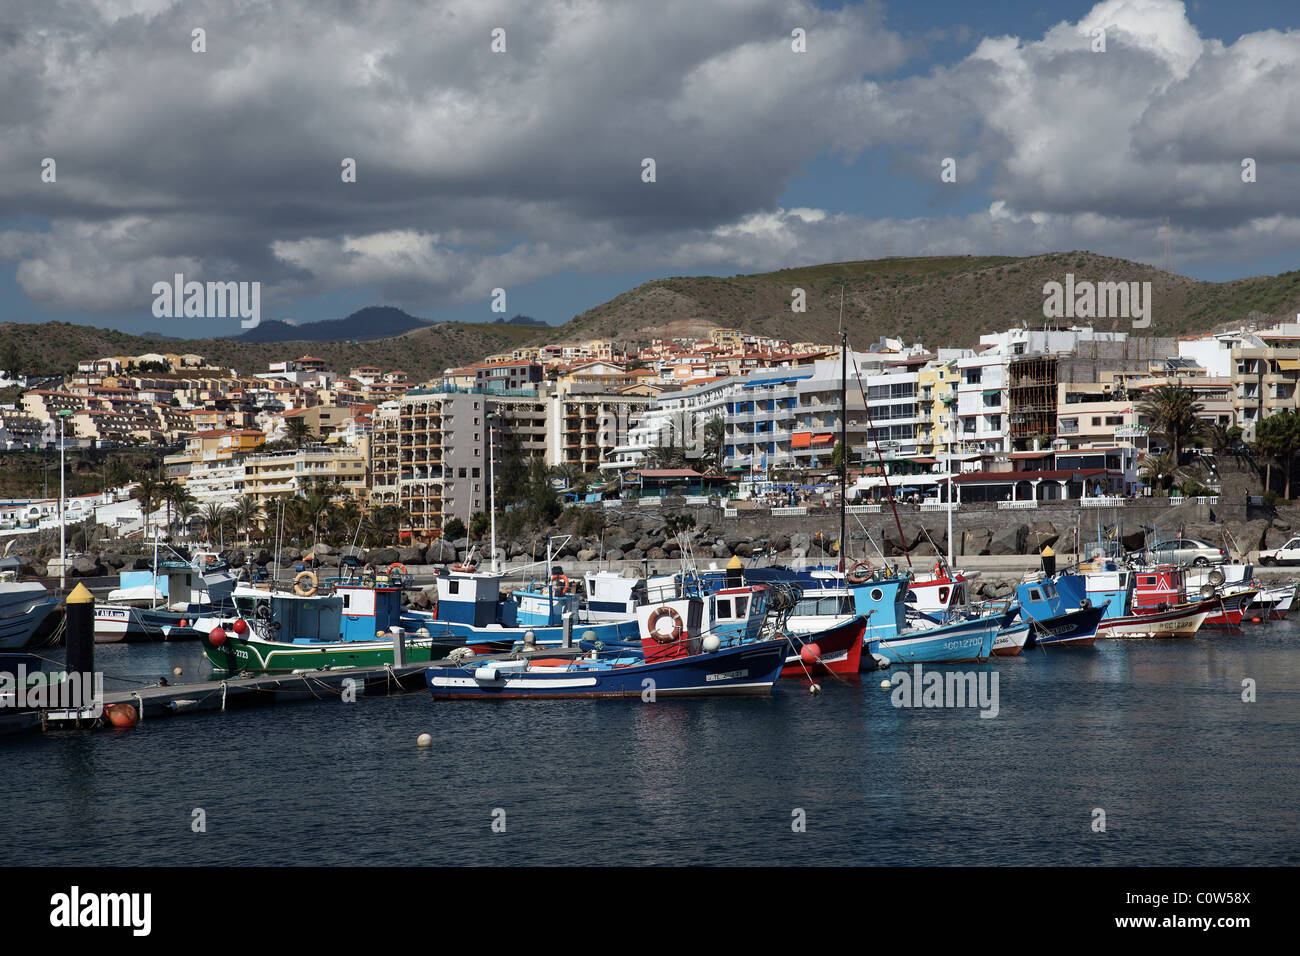 Harbour in Arguineguin, Gran Canaria, Spain, Stock Photo